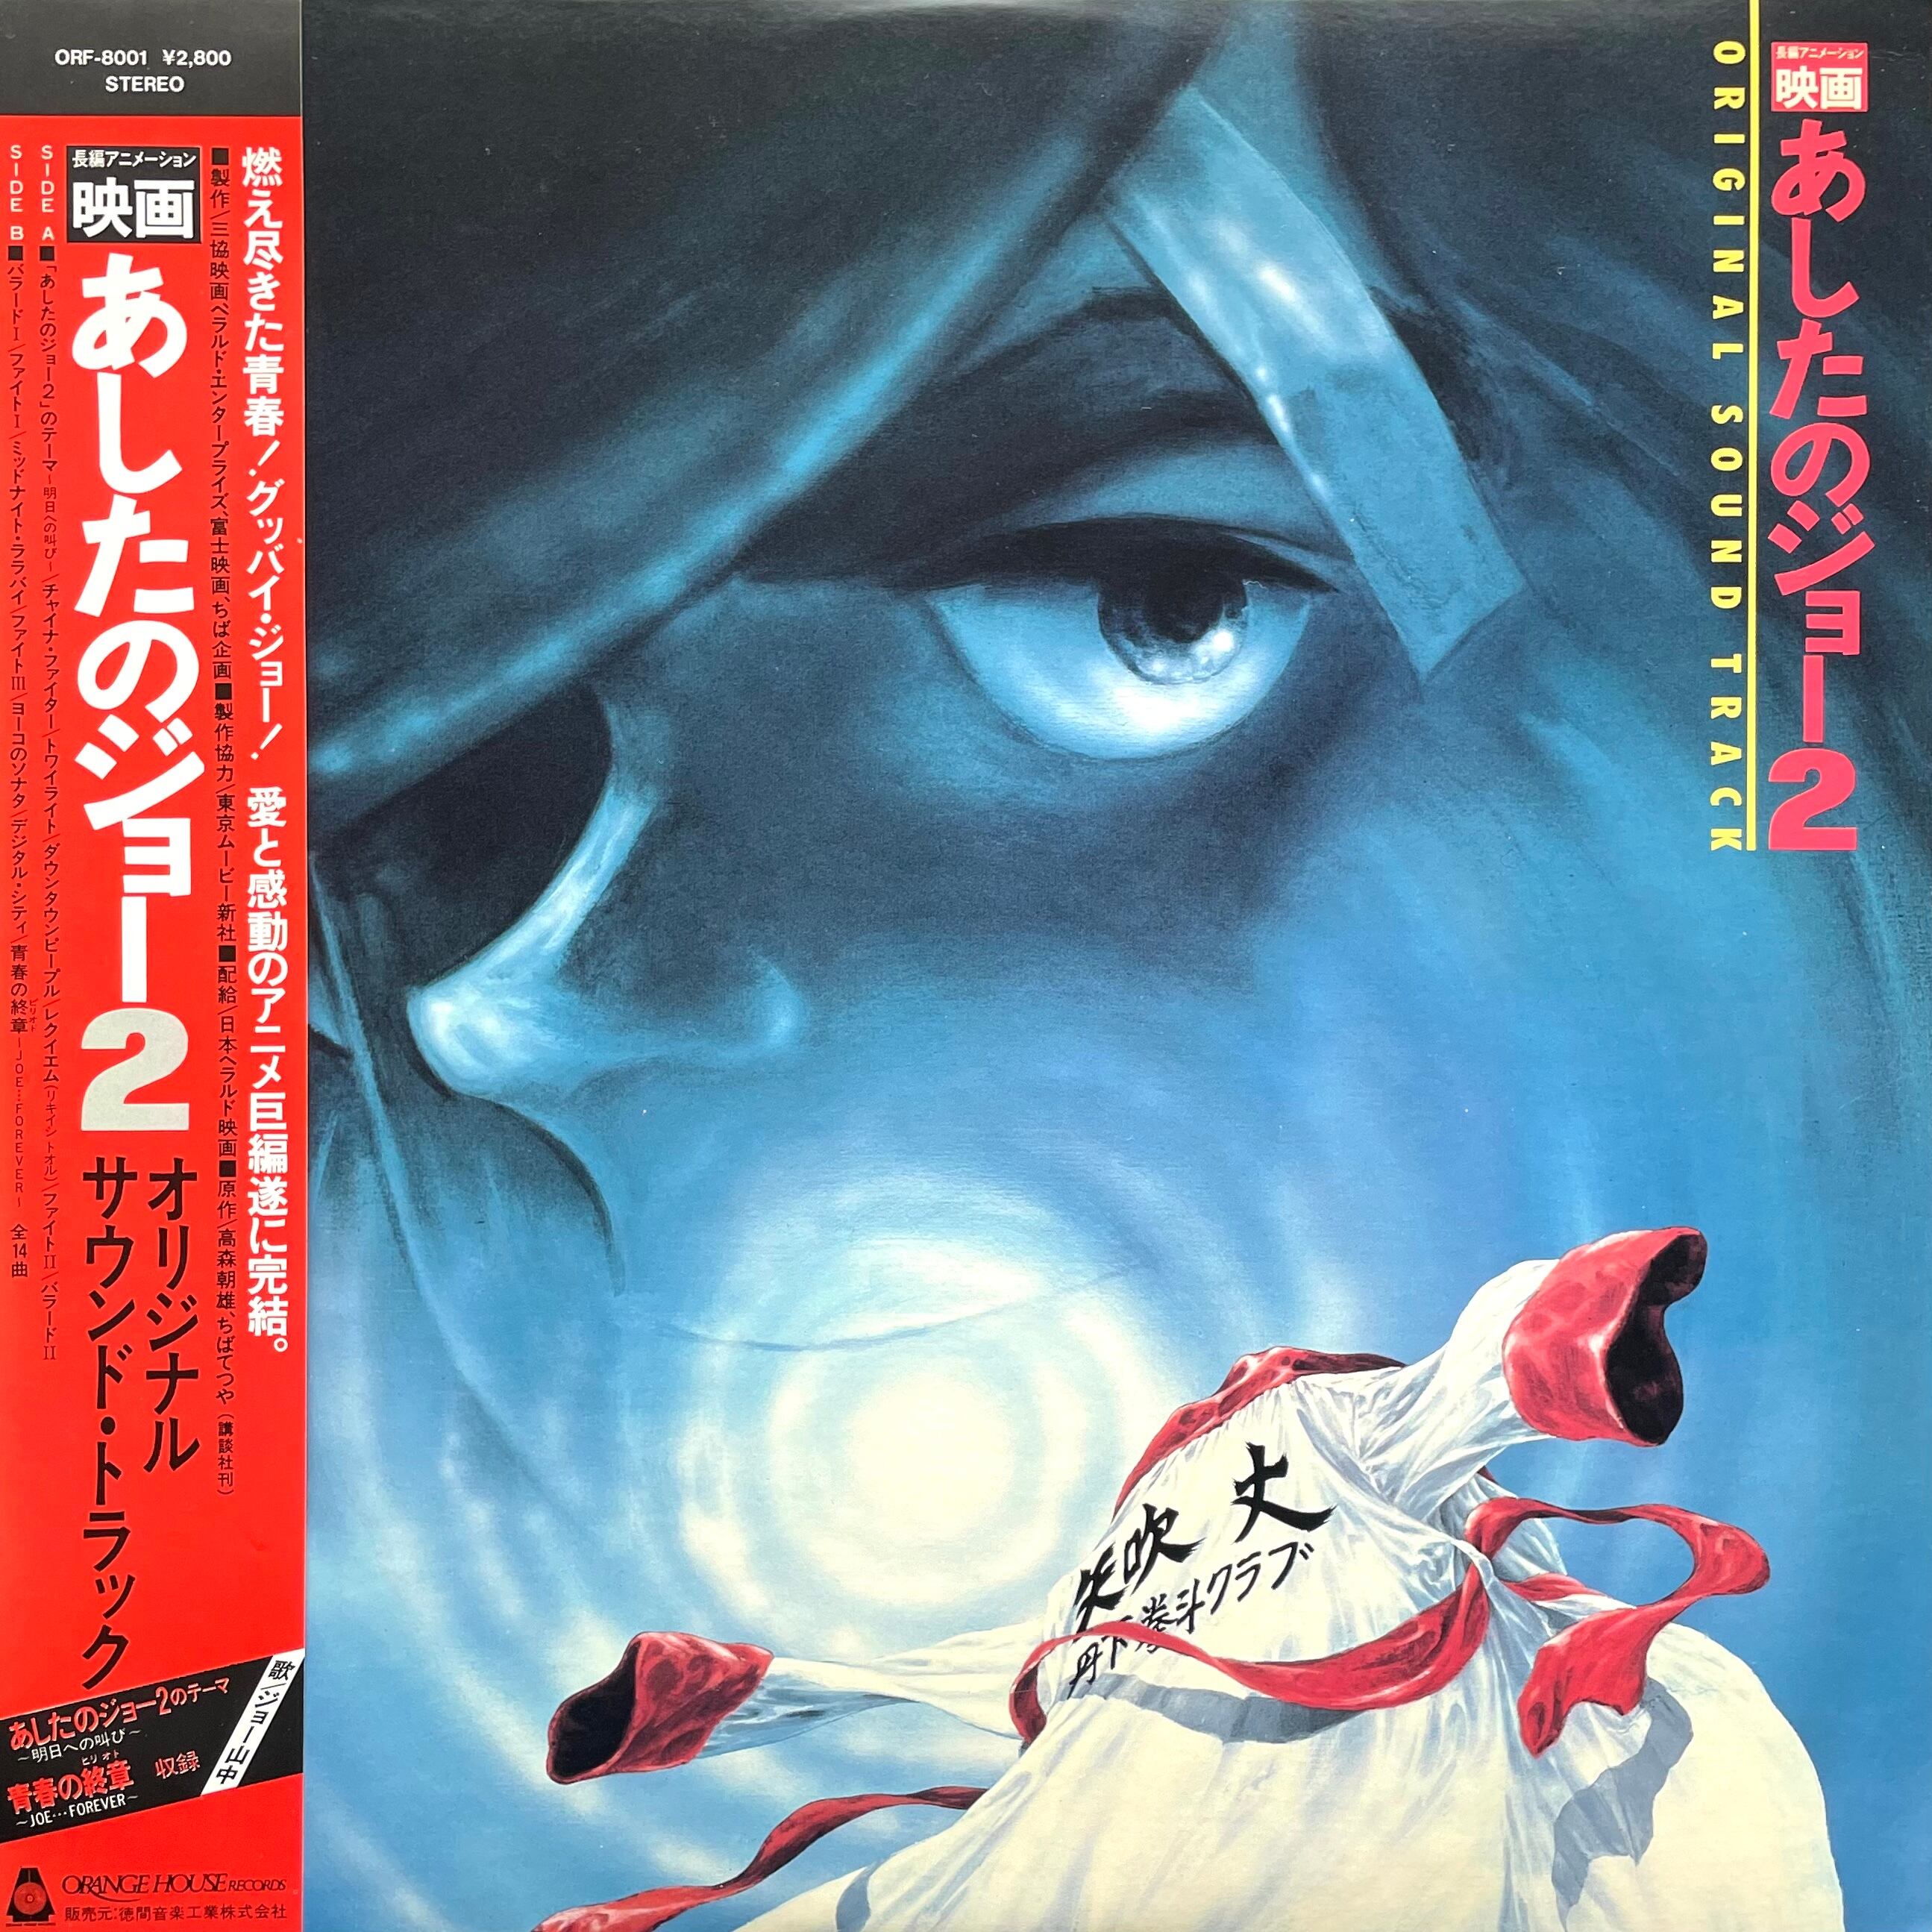 LP Ichiro Araki Chito Kawachi Ashita No Joe OST Tokyo Condition  Japanese Vinyl Shop